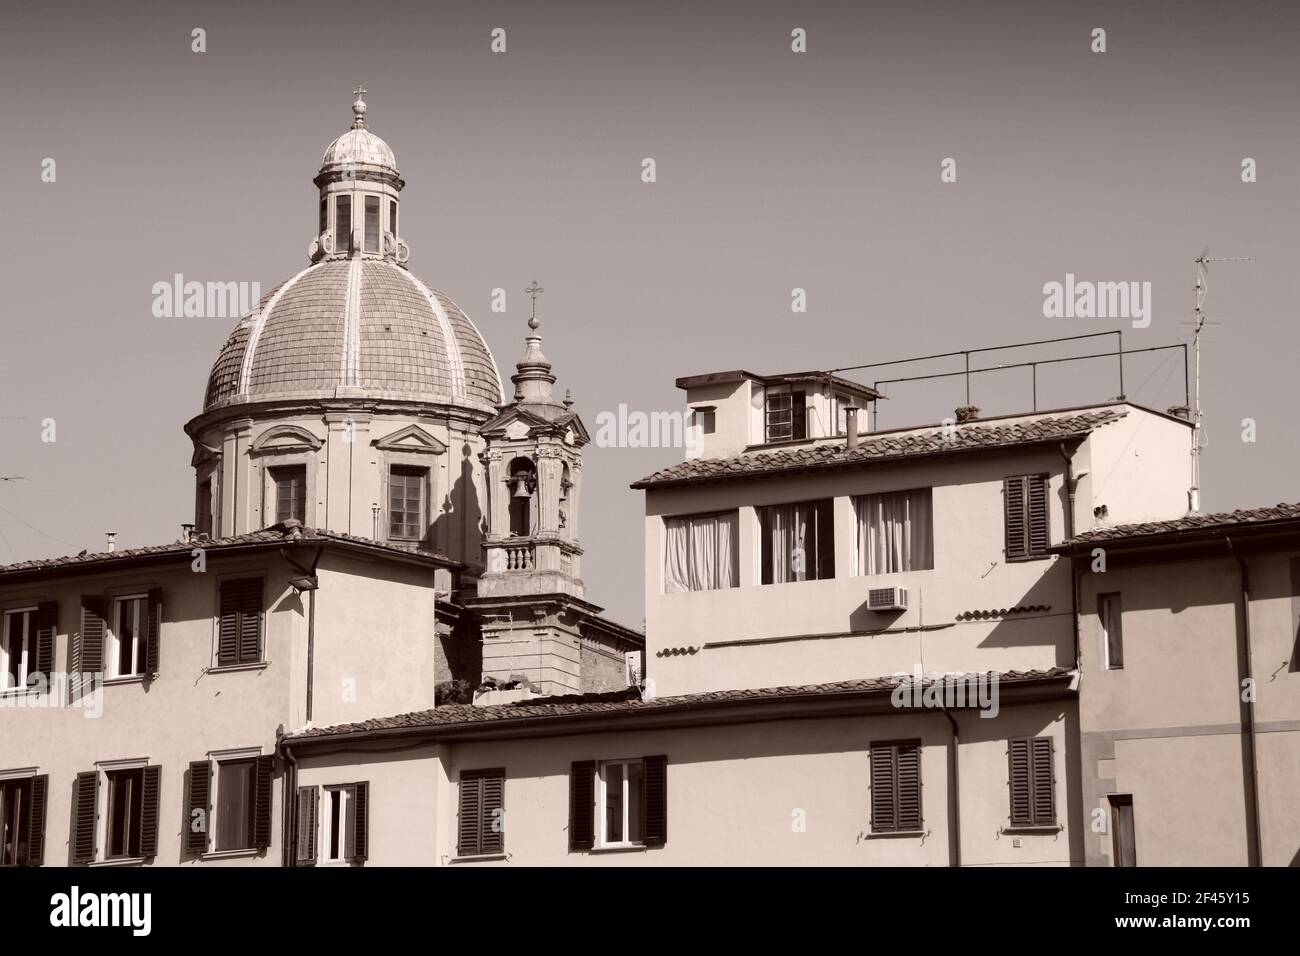 San Frediano à Cestello, une église dans la section Oltrarno de Florence, Toscane, Italie. Ton sépia : style rétro monochrome. Banque D'Images